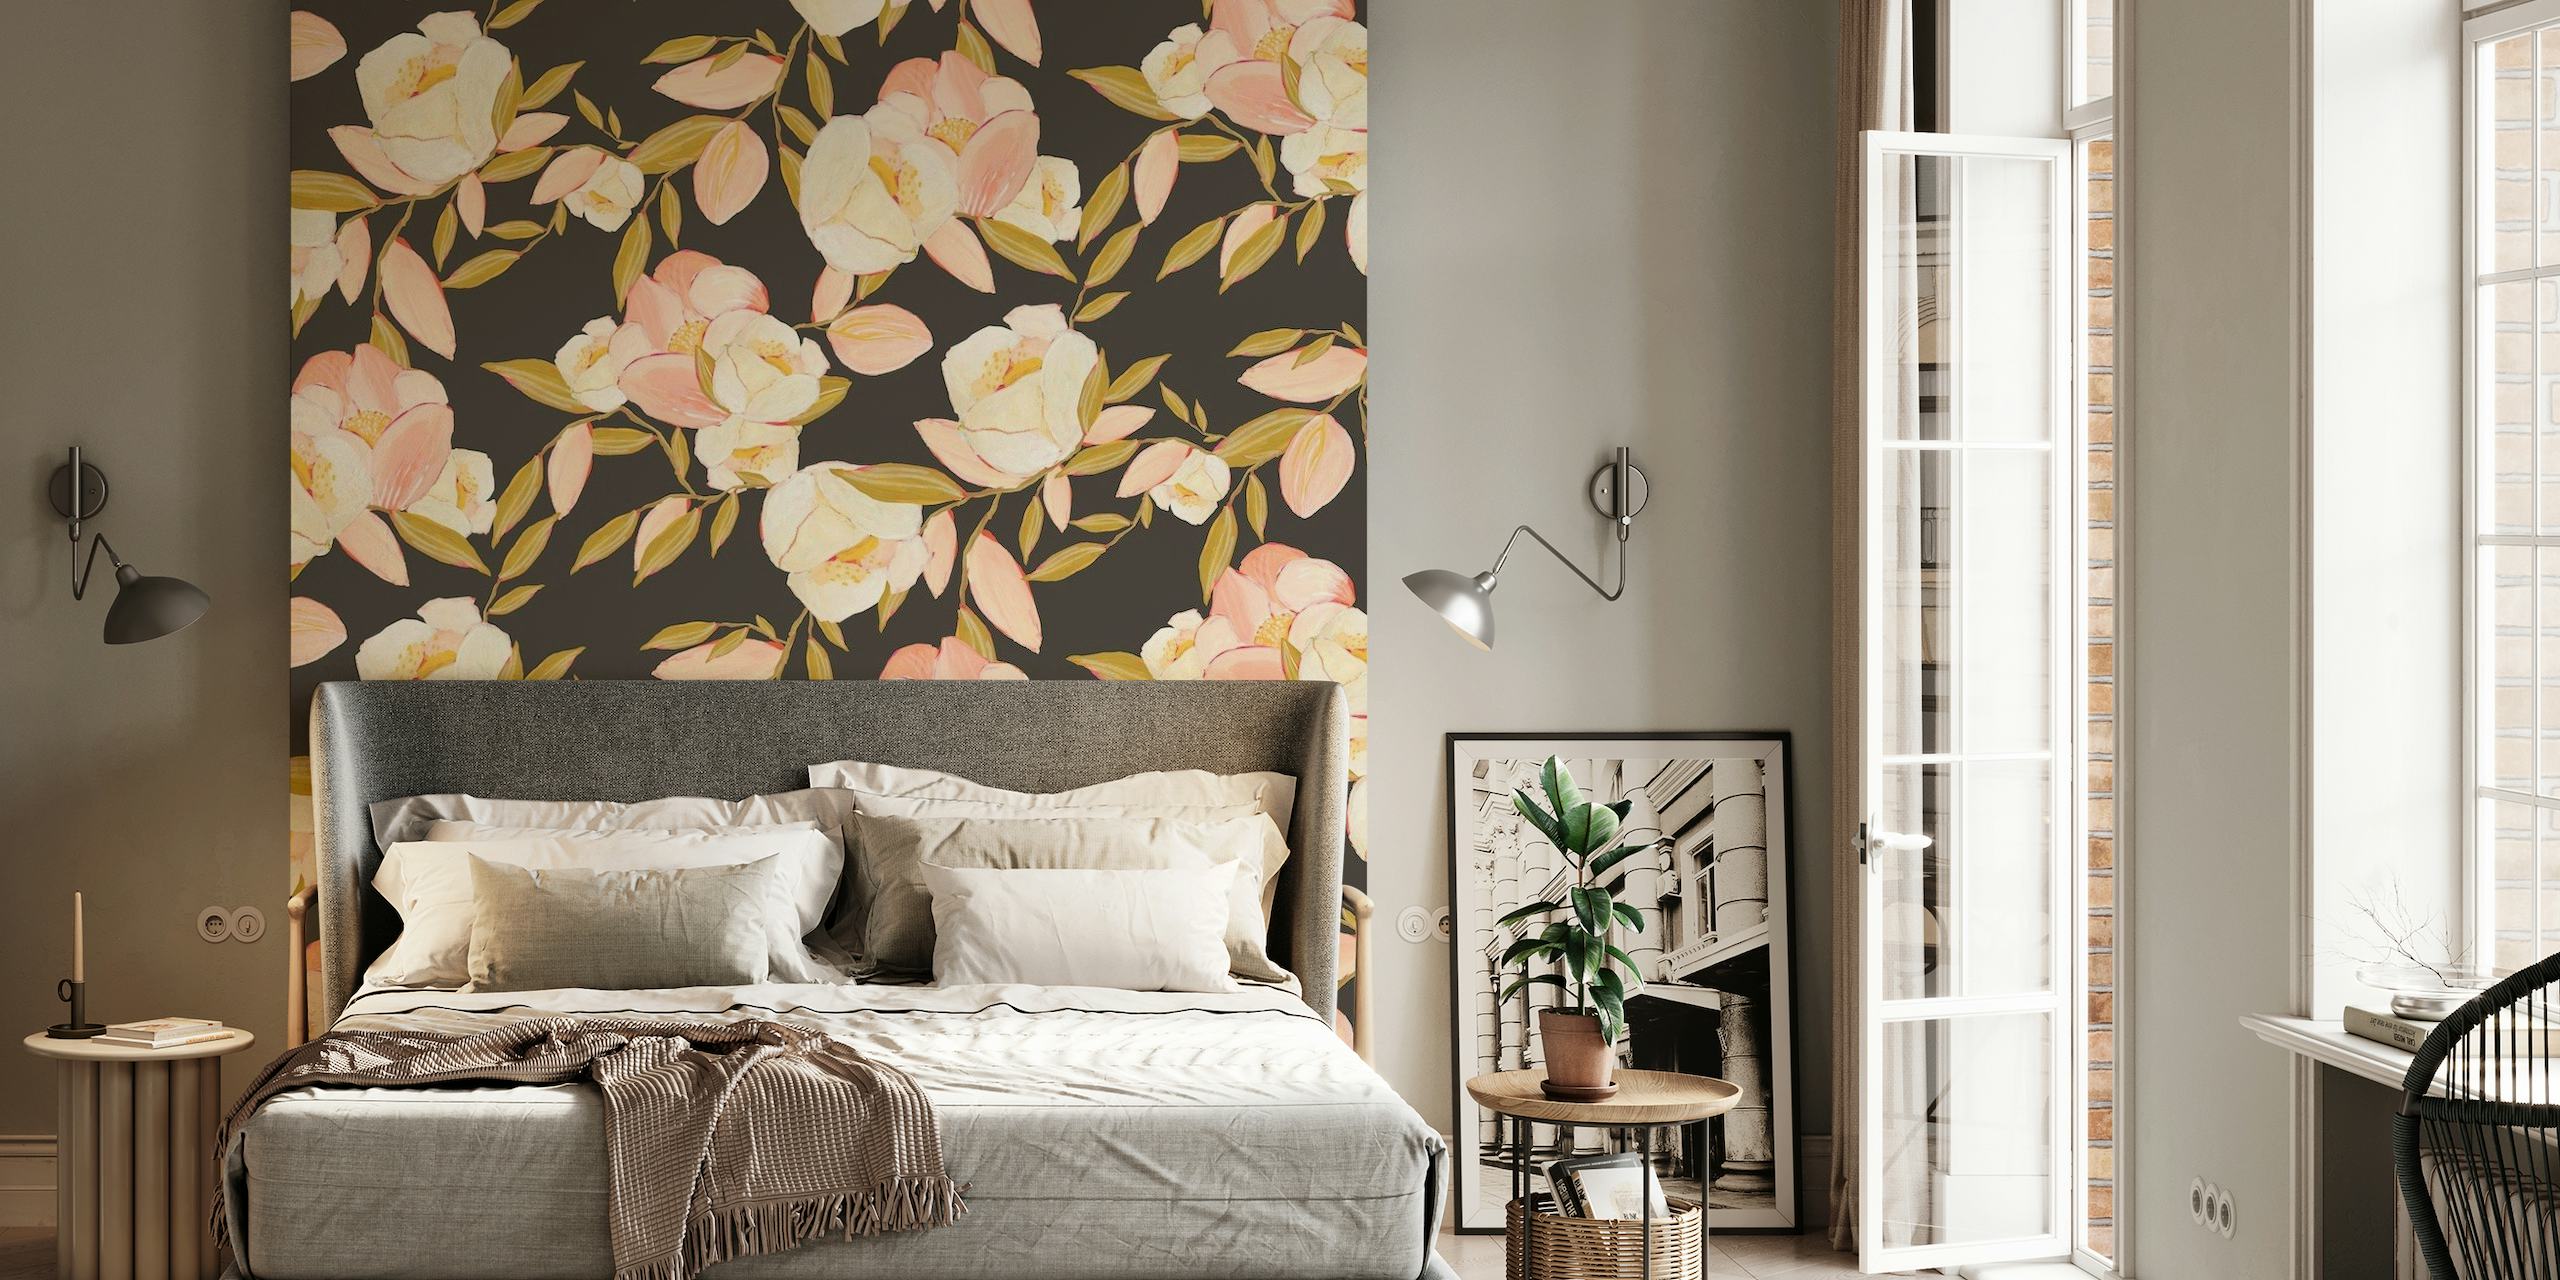 Fotomural vinílico de parede com arranjo floral temperamental com flores em tons pastéis e fundo escuro